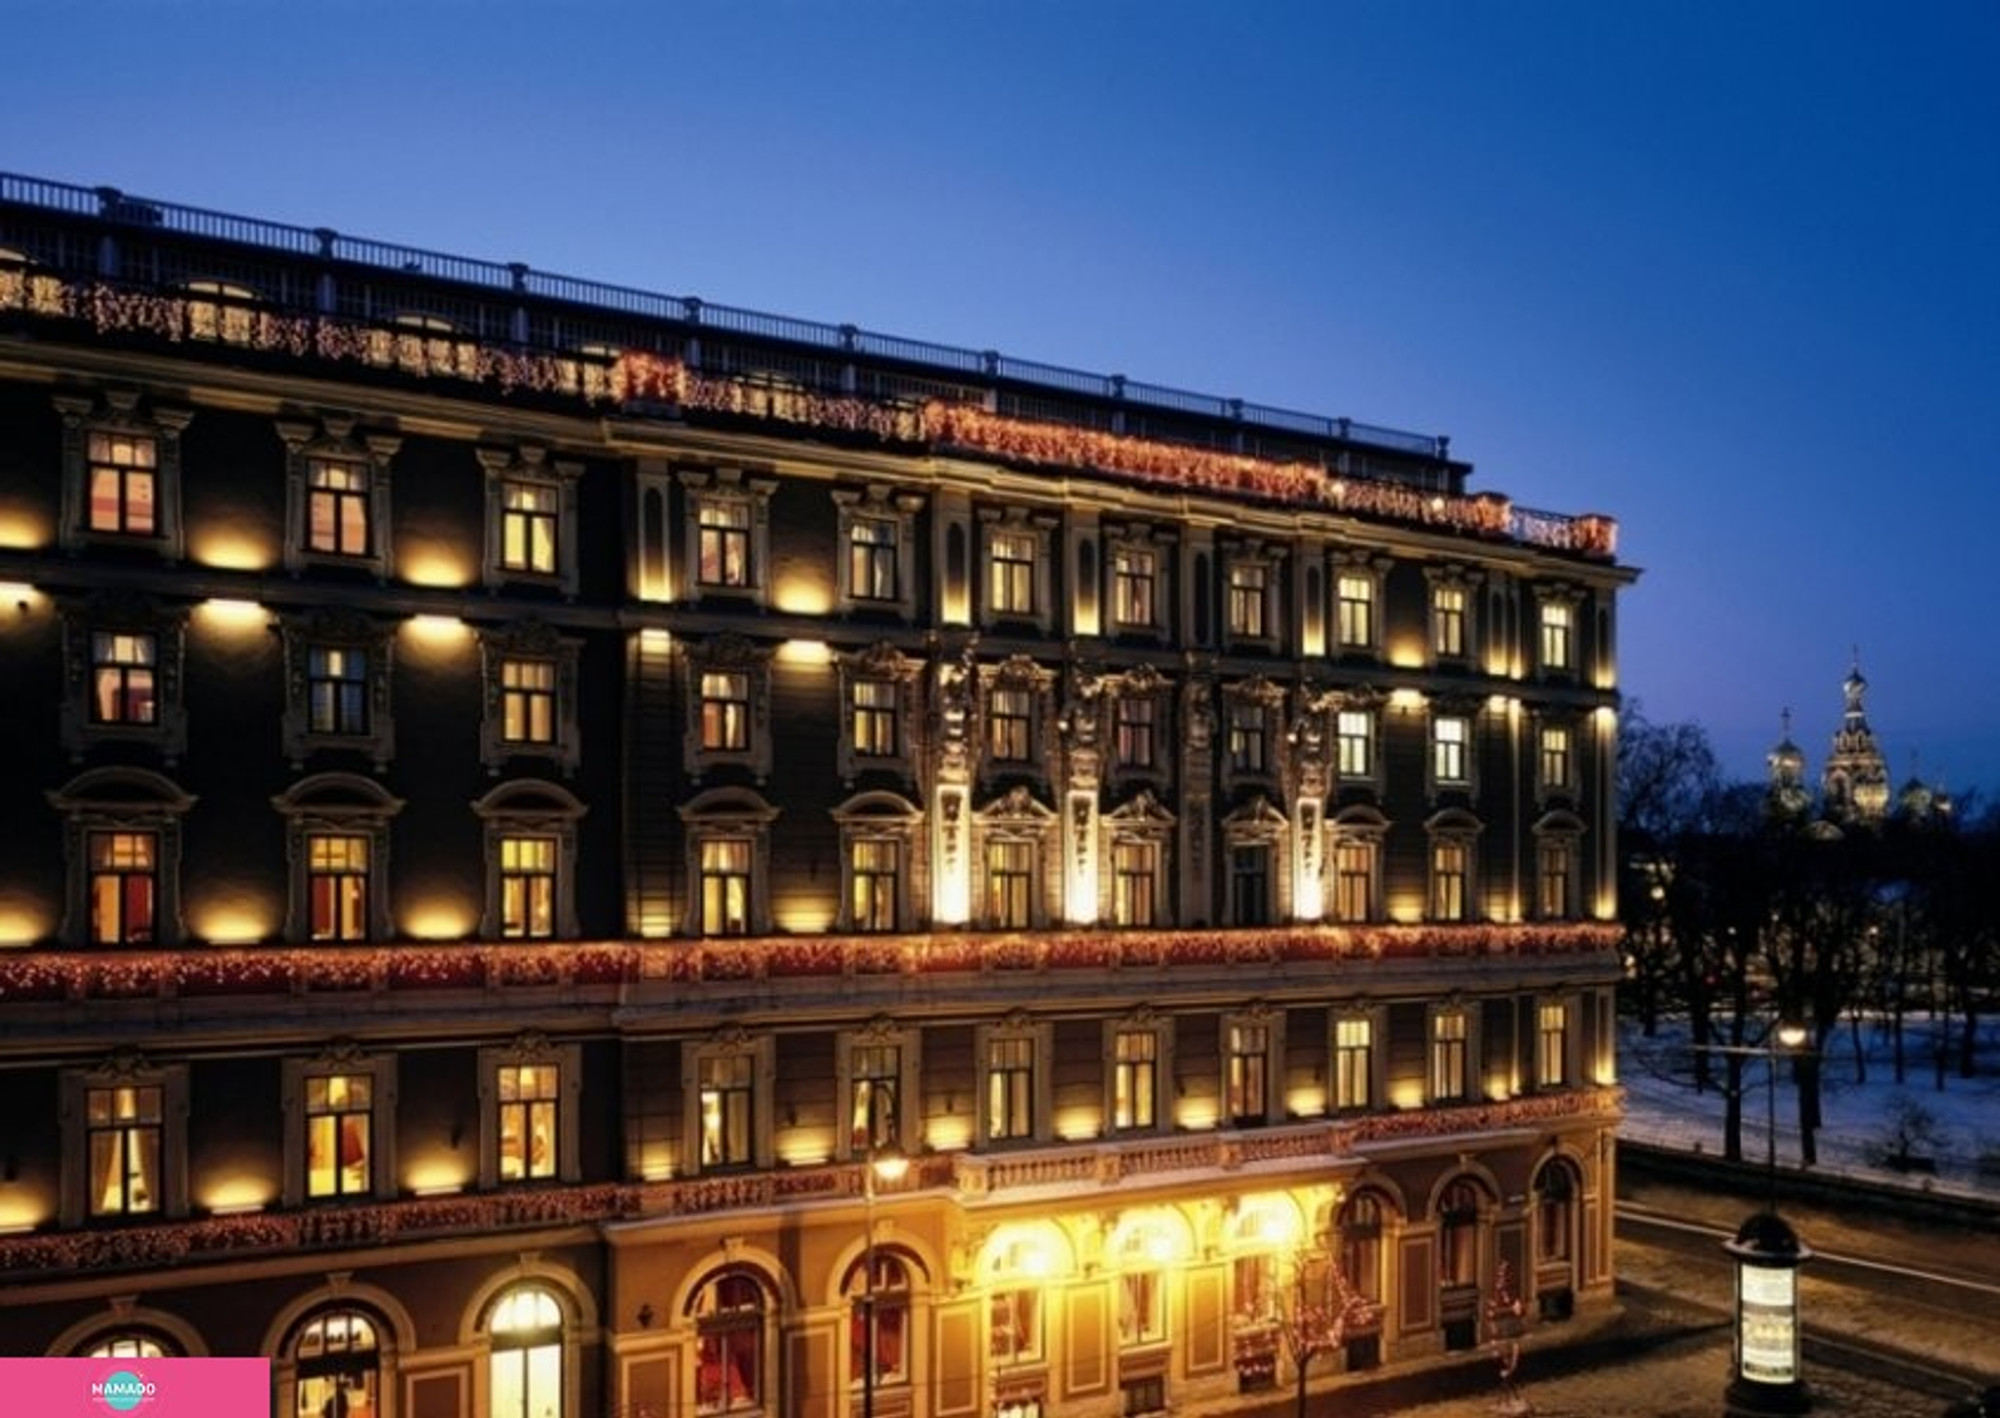 "Гранд Отель Европа", Grand Hotel Europe, гостиница в центре в Петербурге 